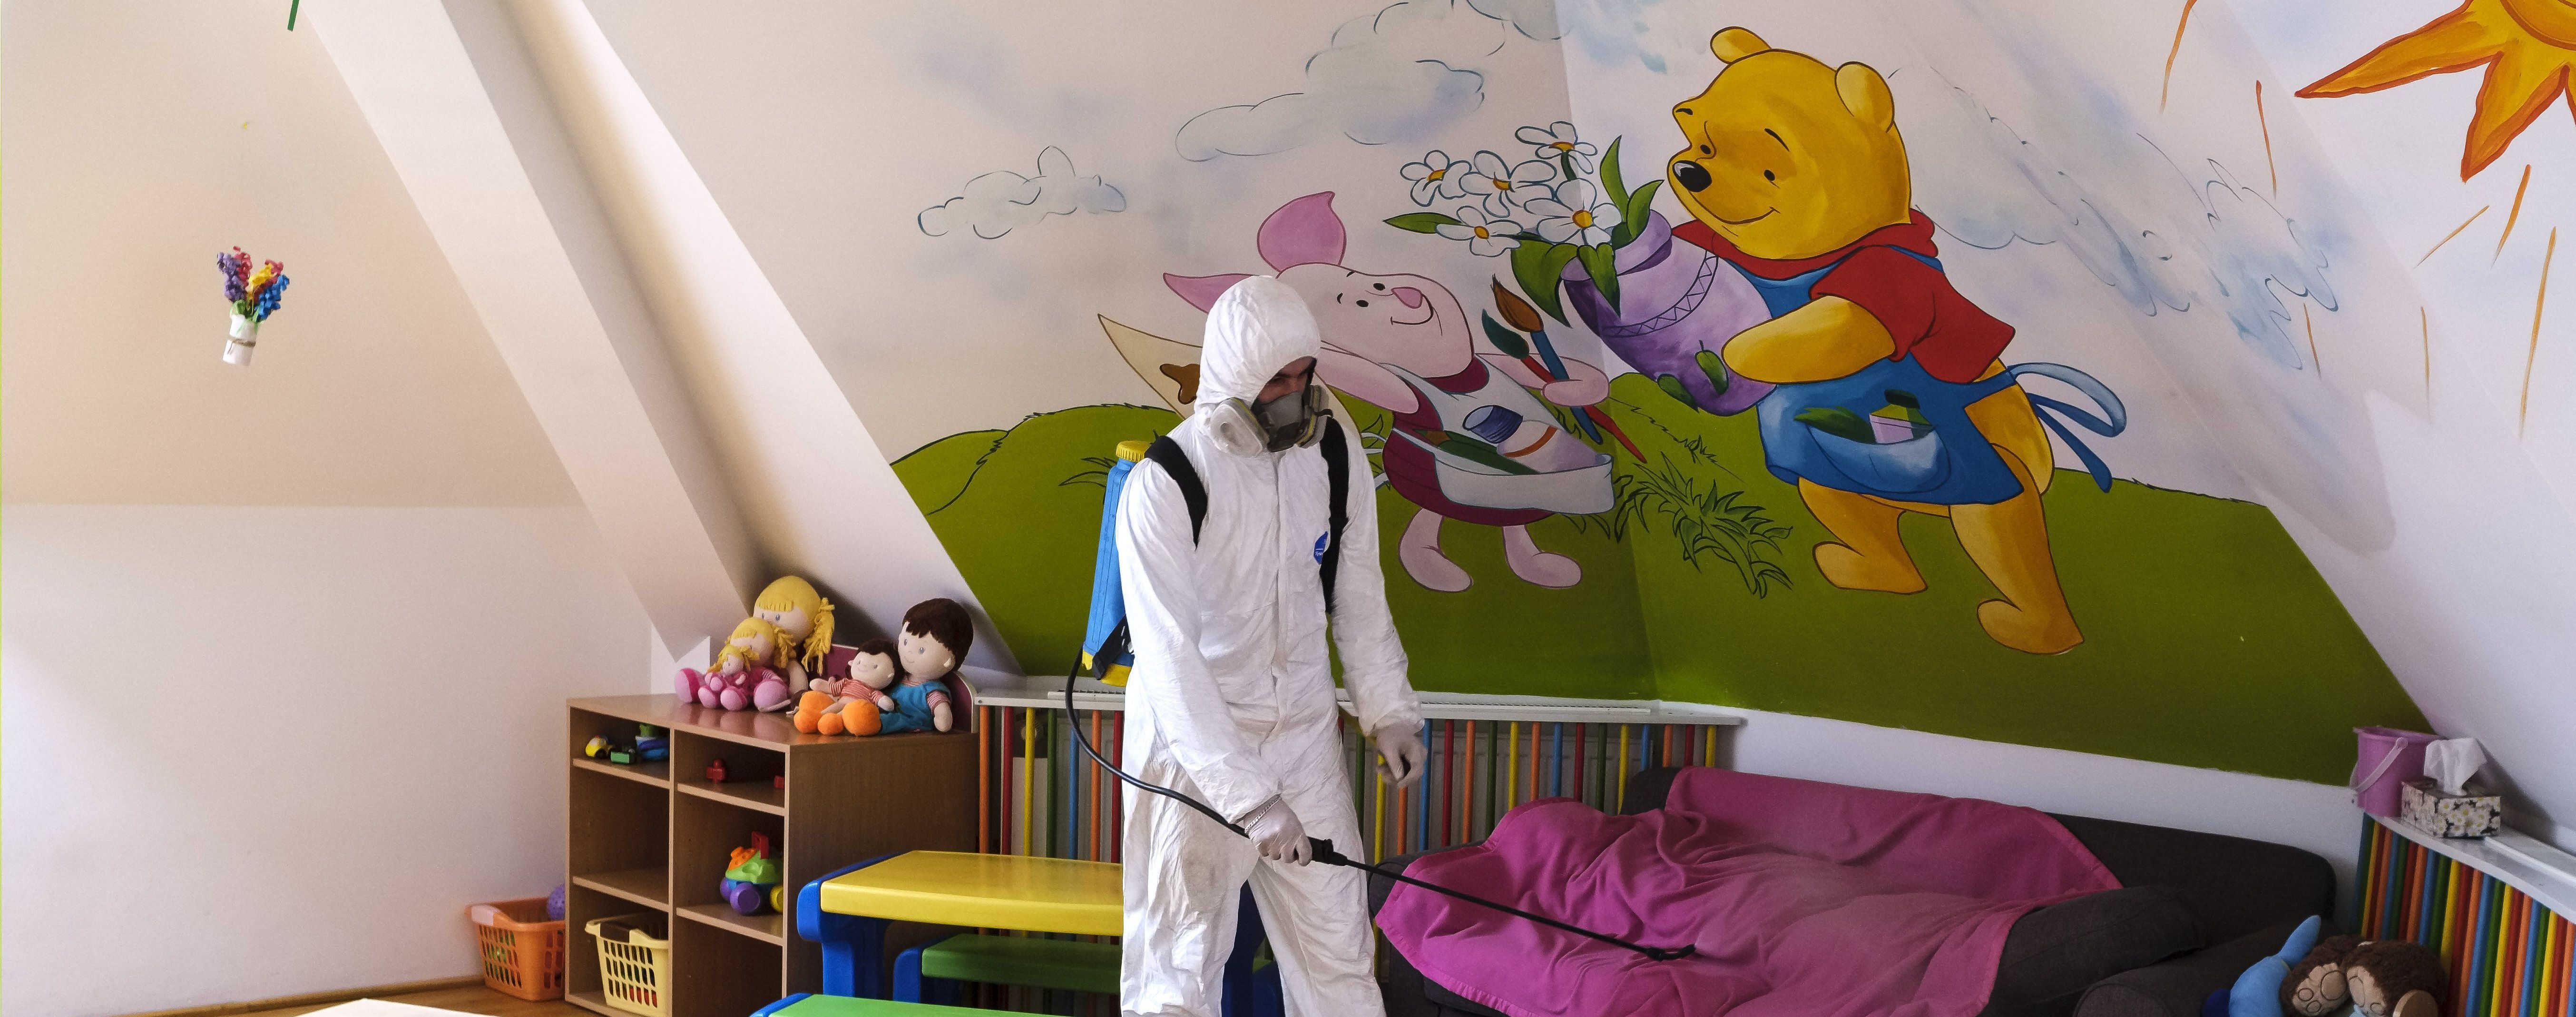 В Тернополе закрывают детский сад из-за вспышки коронавируса